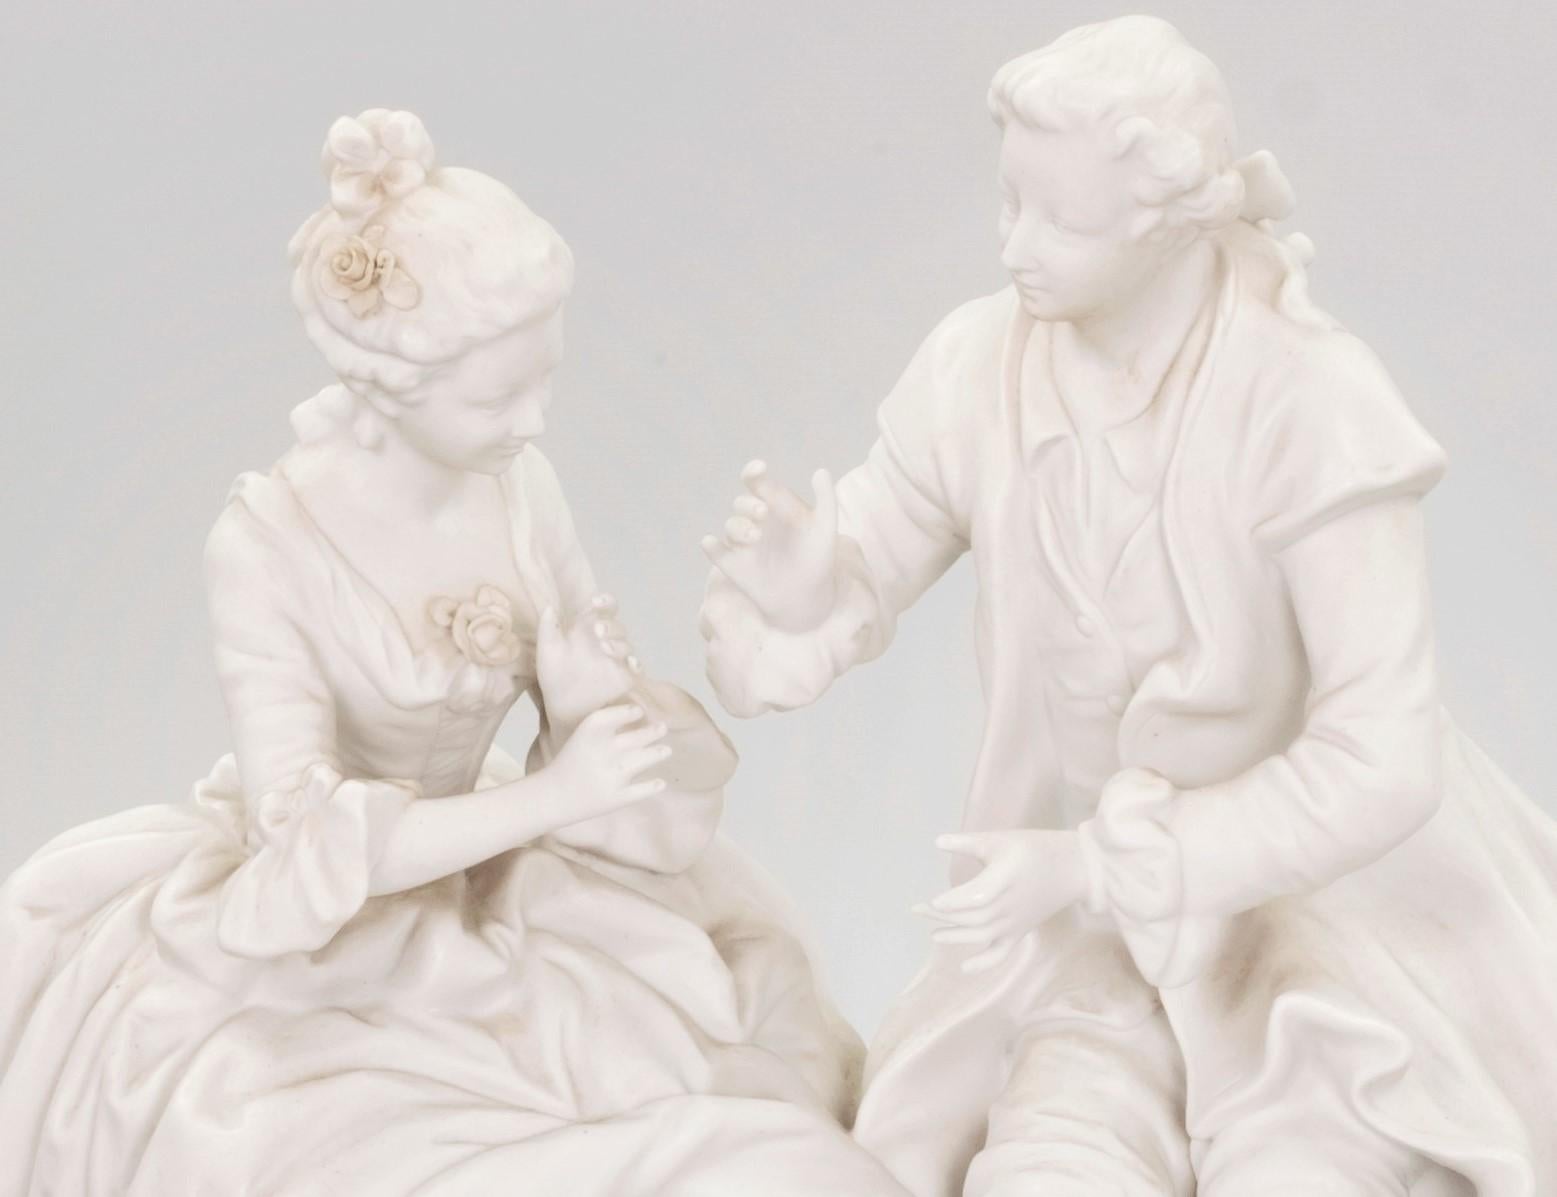 Figurine en porcelaine biscuit française du 19e siècle représentant un couple assis et engagé dans une conversation. La figurine est marquée au dos et numérotée 